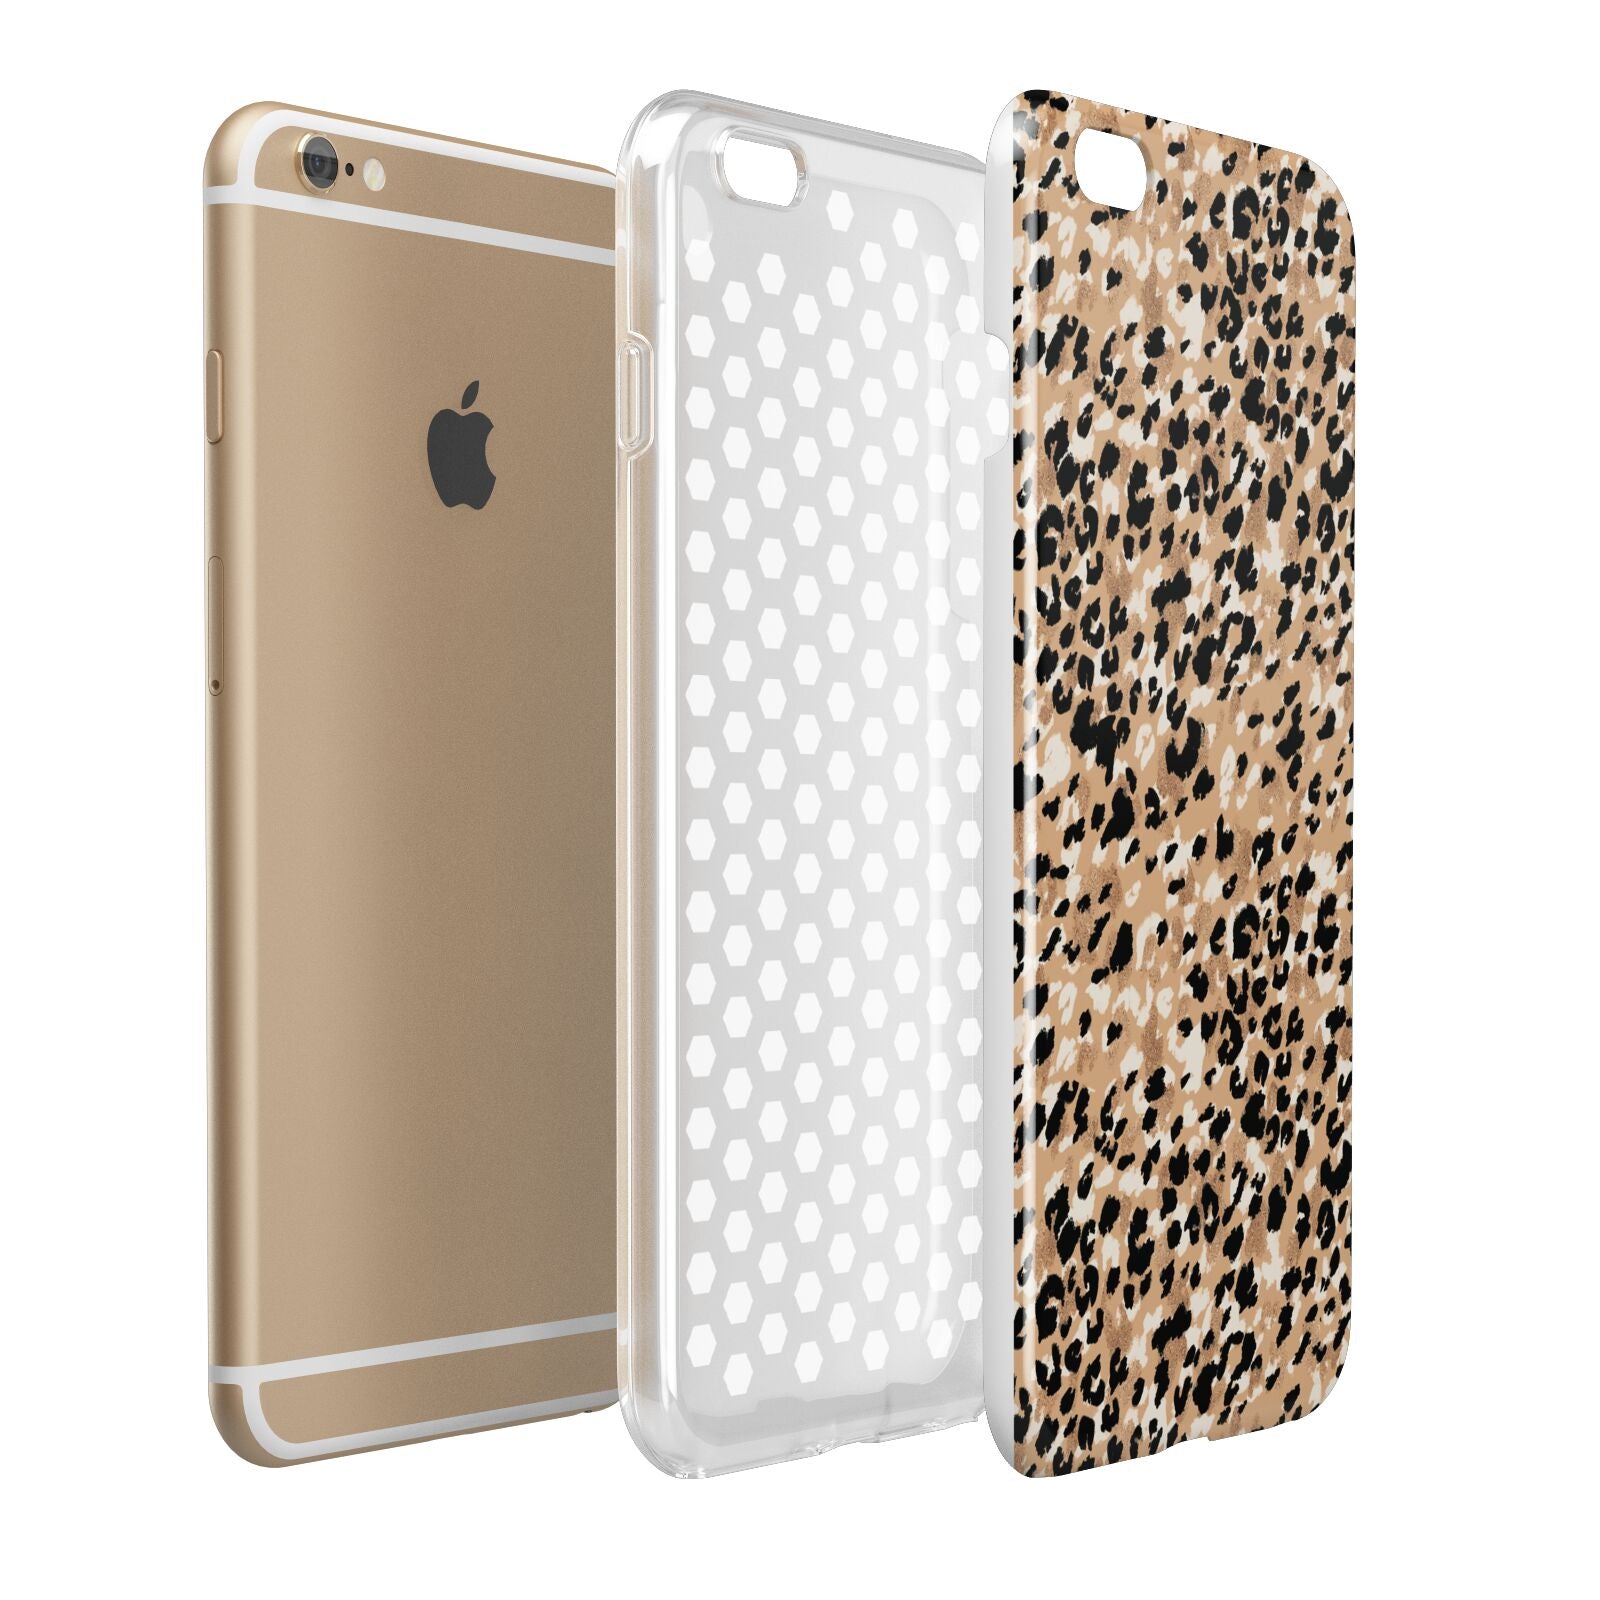 Leopard Print Apple iPhone 6 Plus 3D Tough Case Expand Detail Image